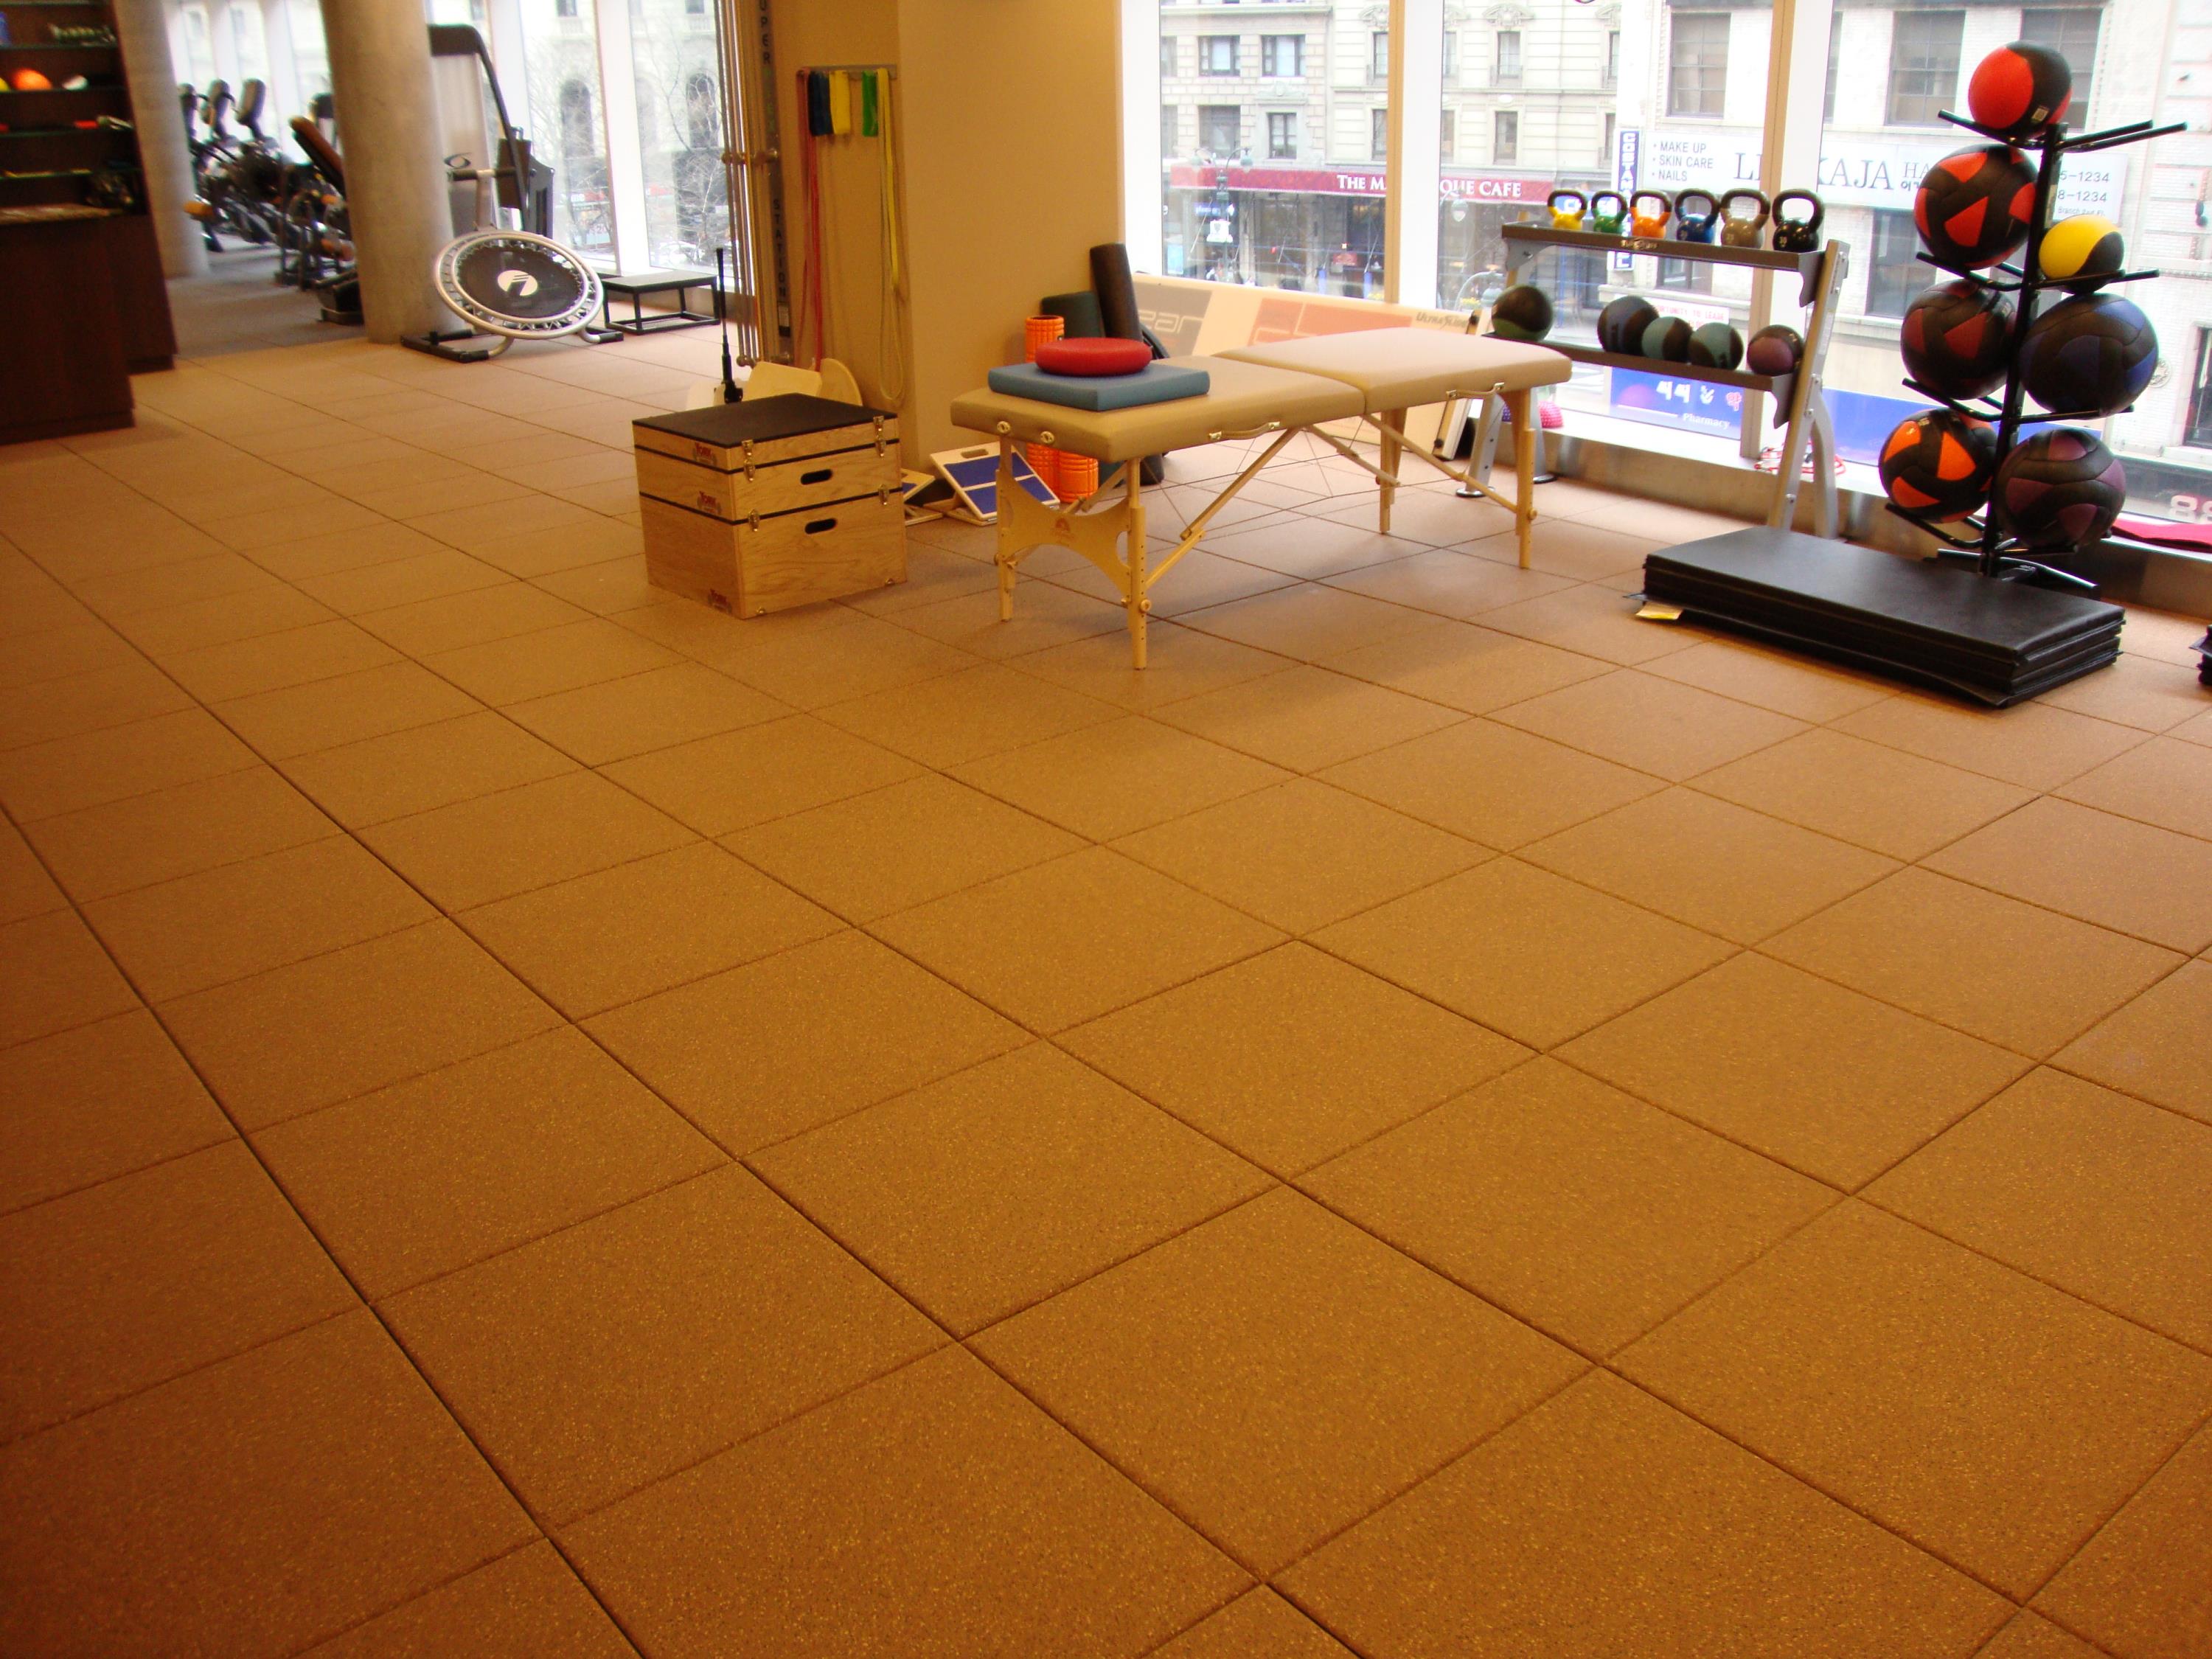 Unity - Indoor Fitness area using 85% Mustard Yellow, 10% Beige, 5% Brown